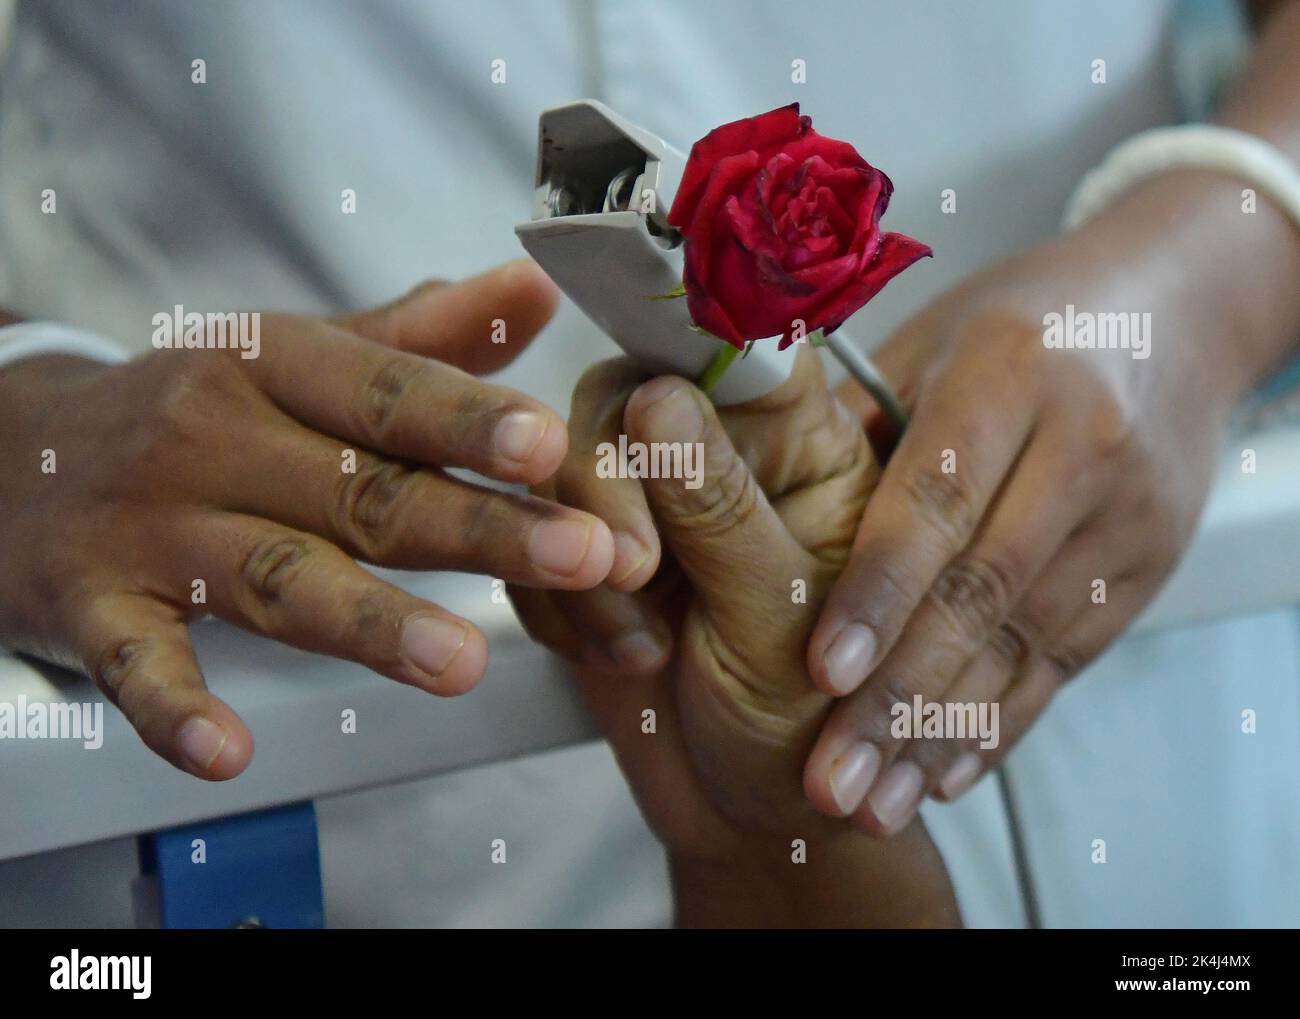 Eine Krankenschwester verteilt eine Rose an einen Krebspatienten am Welt-Rose-Tag zum wohl von Krebspatienten, der jedes Jahr am 22.. September beobachtet wird, um Menschen für Krebs zu sensibilisieren und Patienten eine helfende Hand zu reichen. Atal Bihari Vajpayee Regional Cancer Center in Agartala. Tripura, Indien. Stockfoto